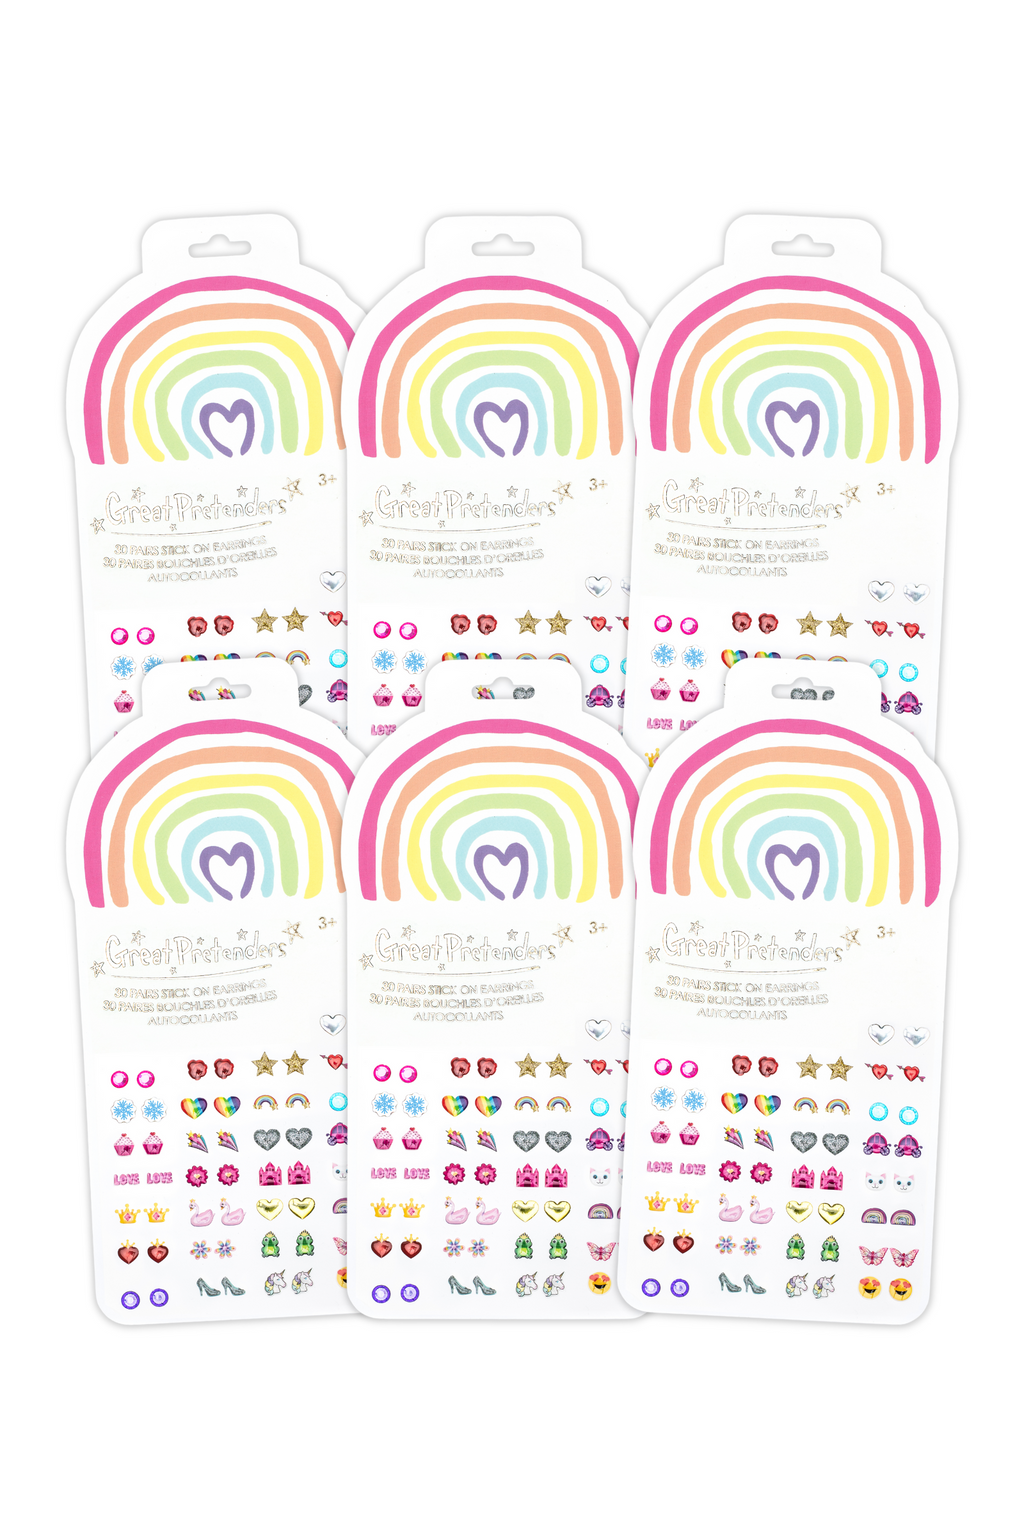 Great Pretenders - Rainbow Love Sticker Earrings - 30 pairs - Little Zebra